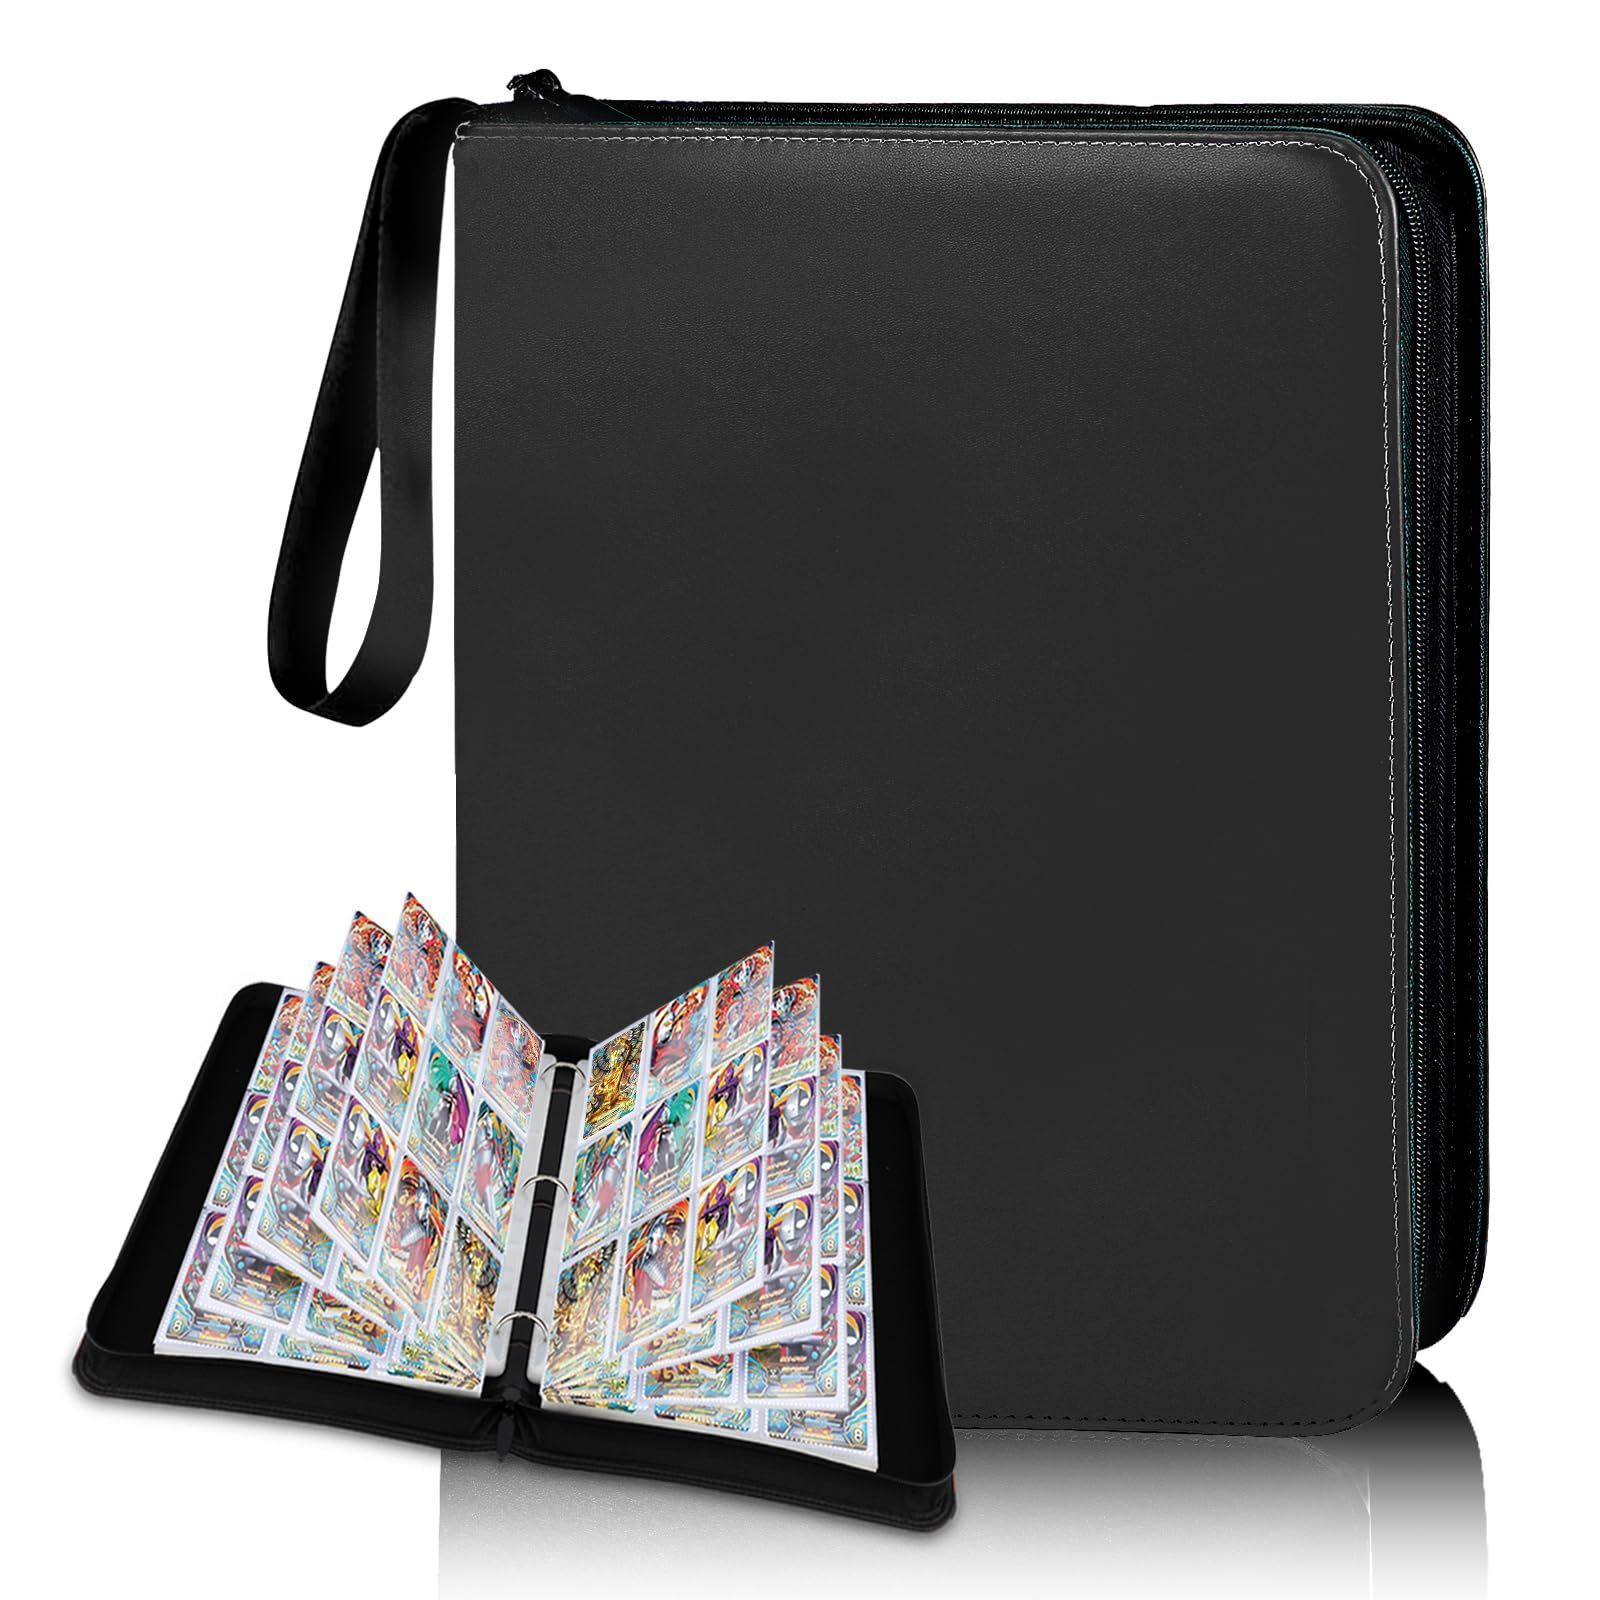 9ポケット カードファイル トレカ ファイル 大容量 900枚収納可能 防水PU素材 カード収納 カードバインダー 透明シート YoKiStar 両面利用 50ページ 各種カードを集める スターカード コレクションファイル (ブラック 9ポケット)